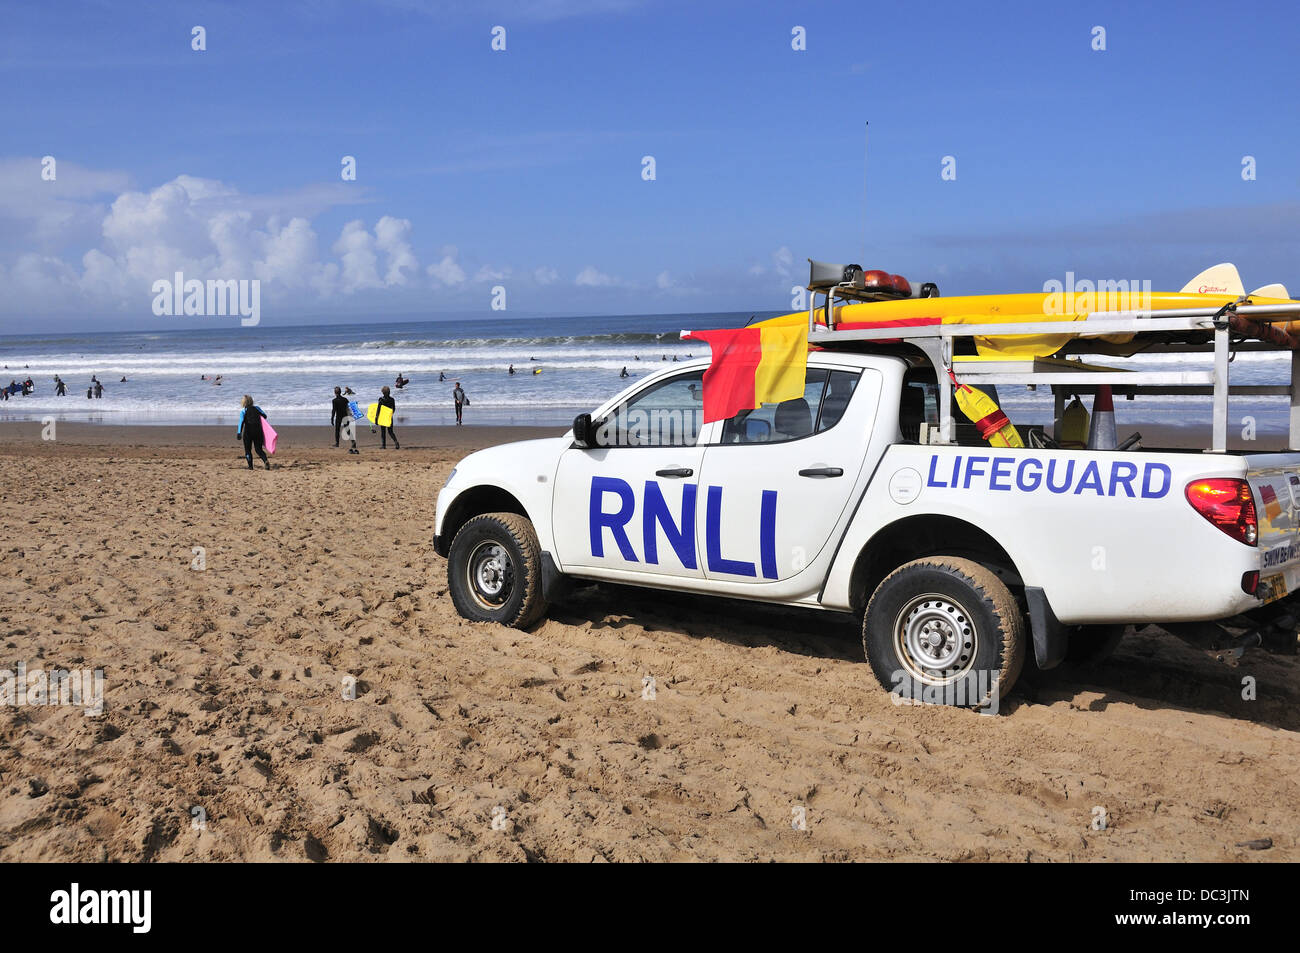 Les sauveteurs et véhicules RNLI en service pour les surfeurs de la célèbre plage de surf de Croyde - North Devon, Angleterre, Royaume-Uni Banque D'Images